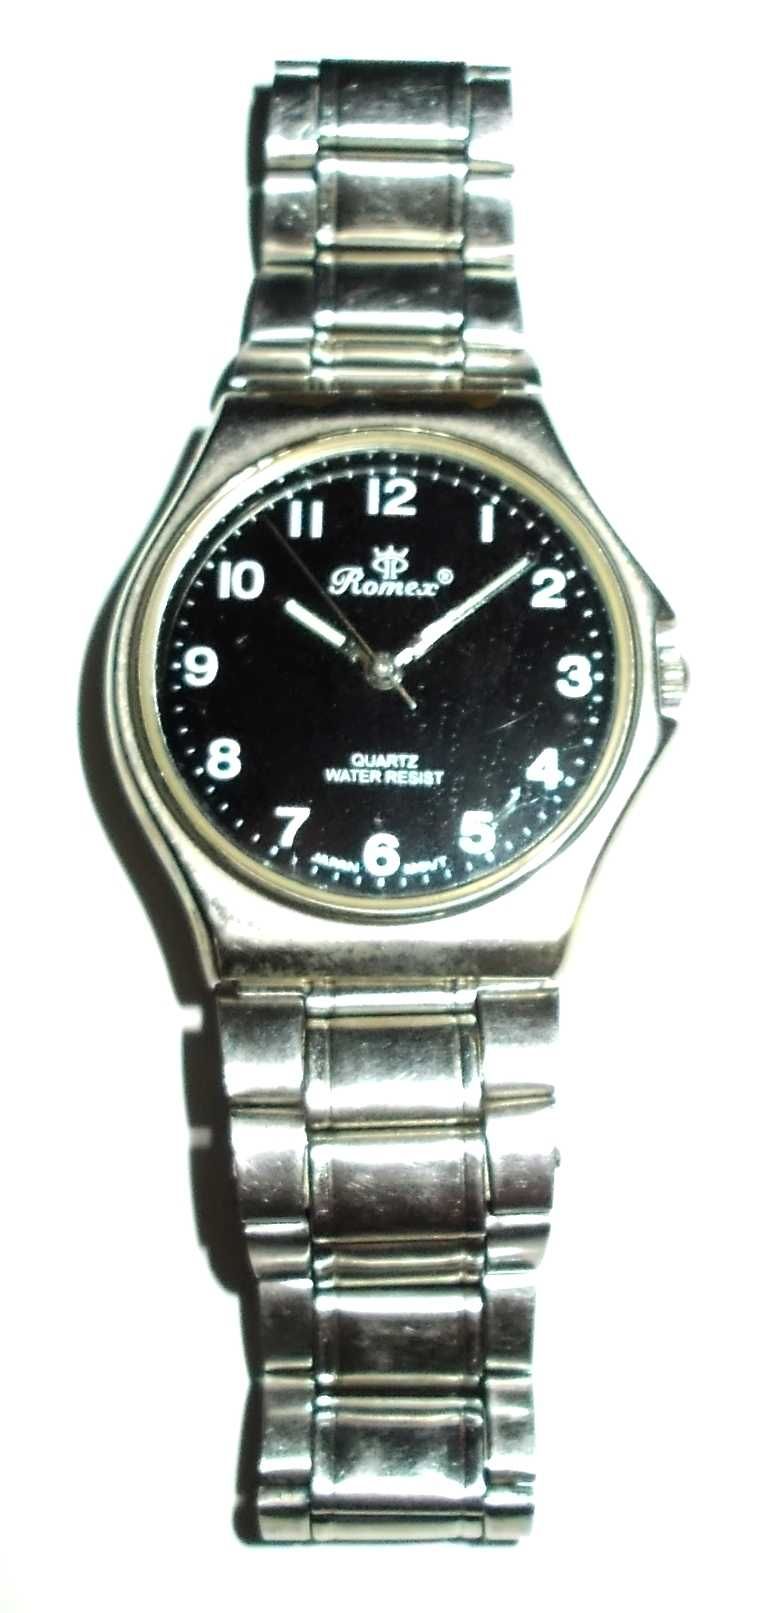 Zegarek męski analogowy - ROMEX (96.09.088) - Japan